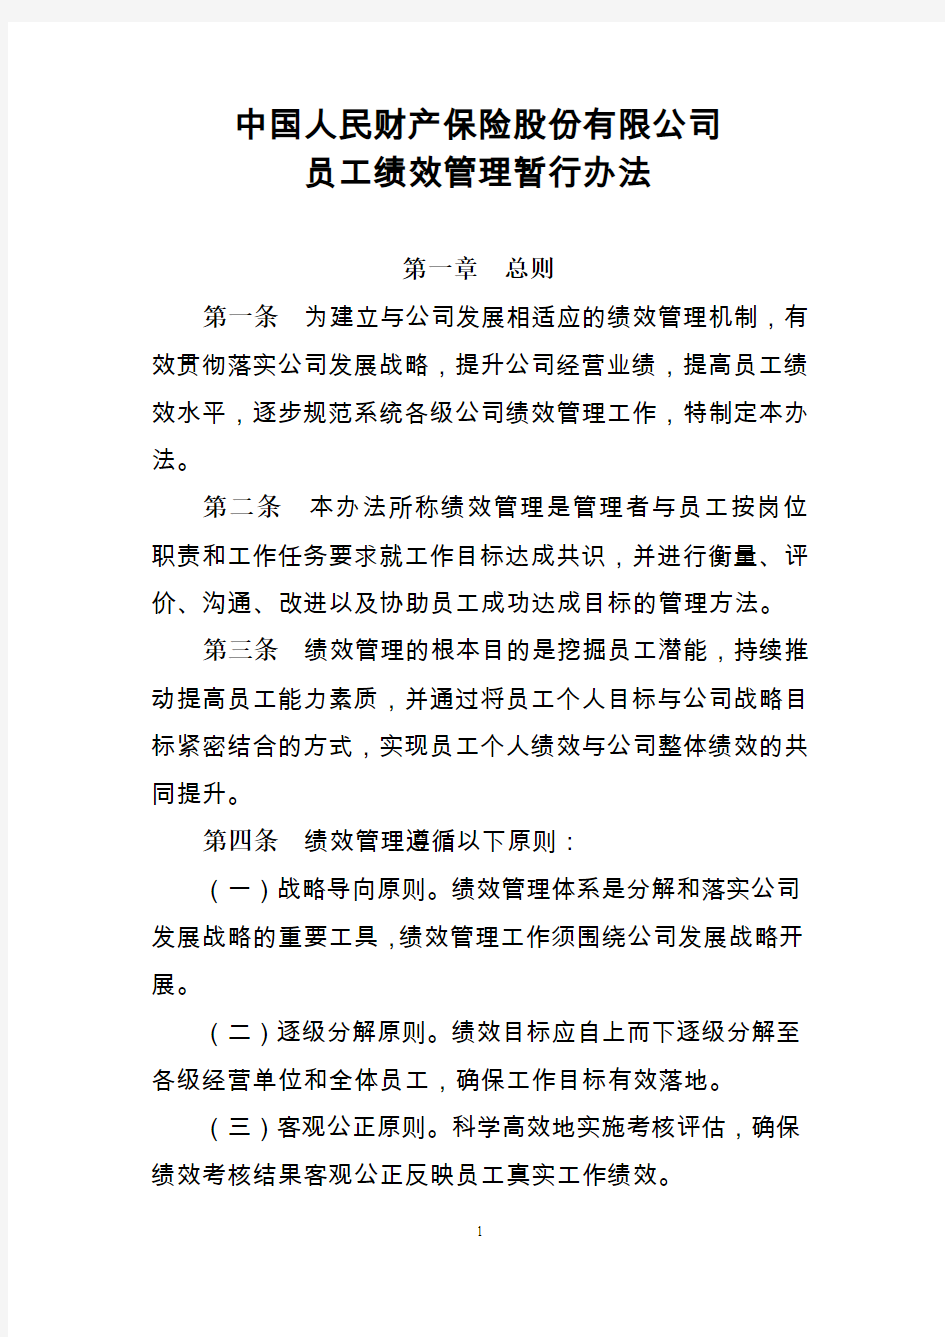 中国人民财产保险股份有限公司员工绩效管理暂行办法